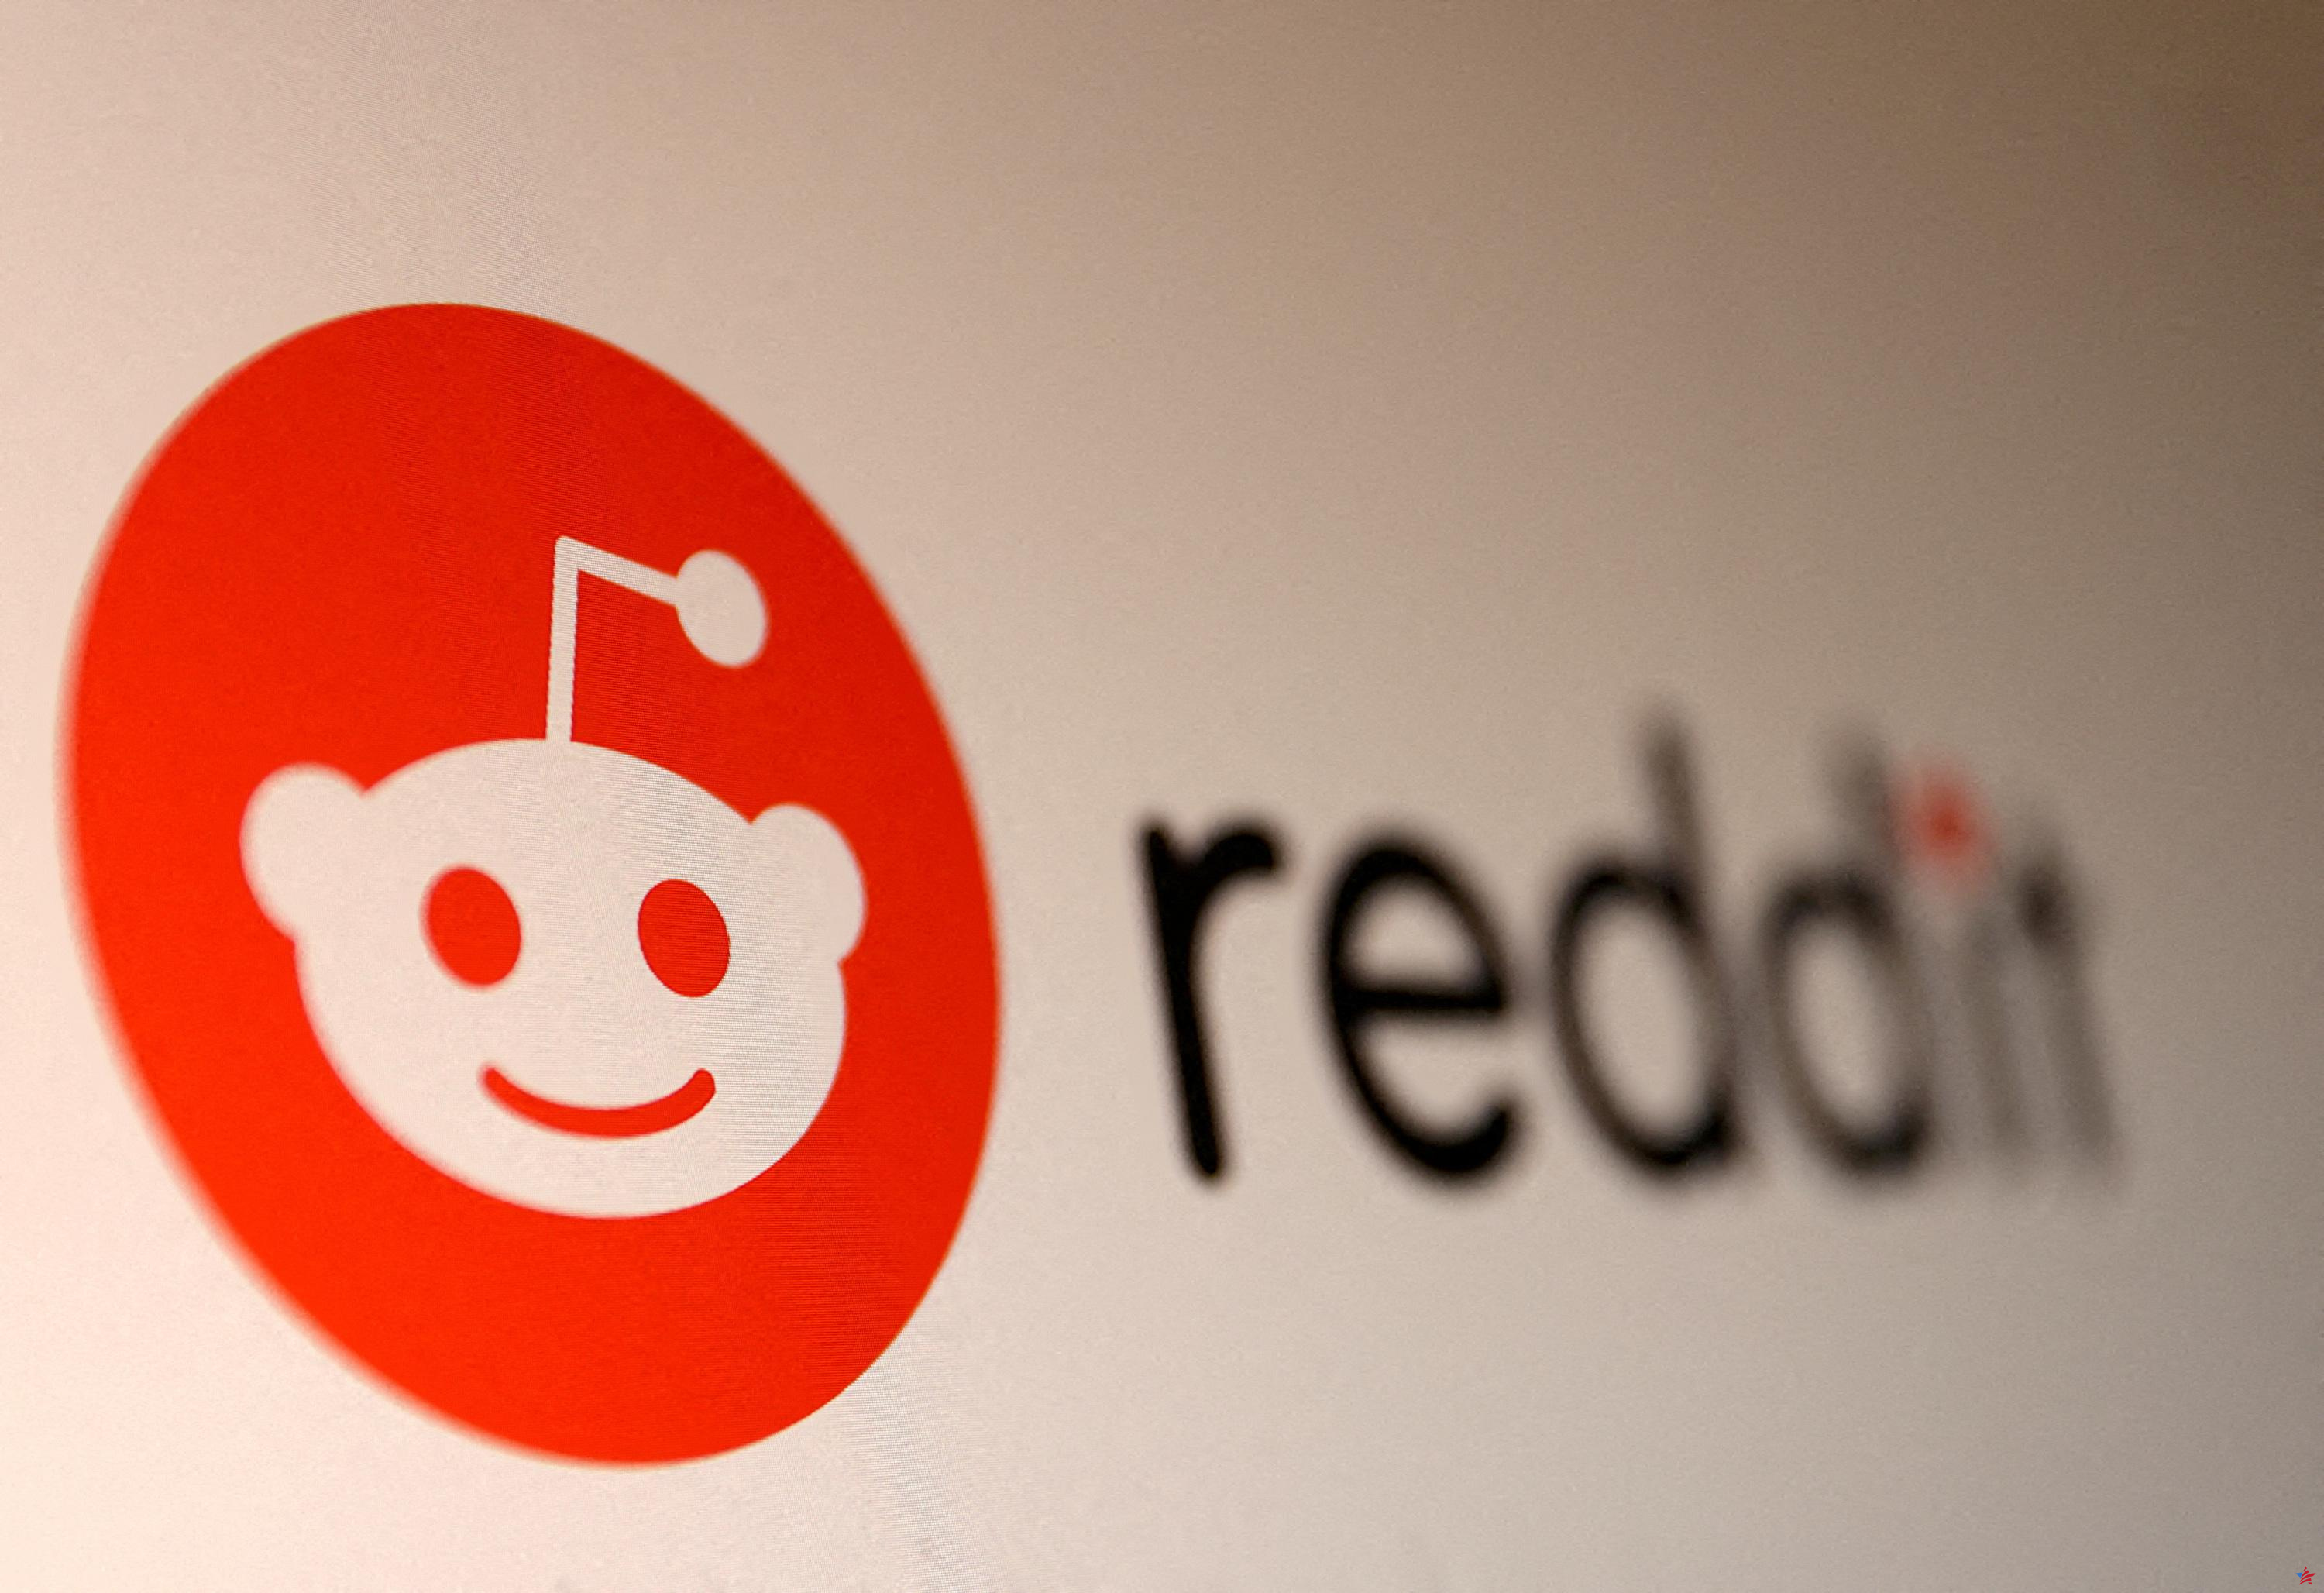 Para su salida a bolsa, Reddit está valorada en 6.000 millones de dólares